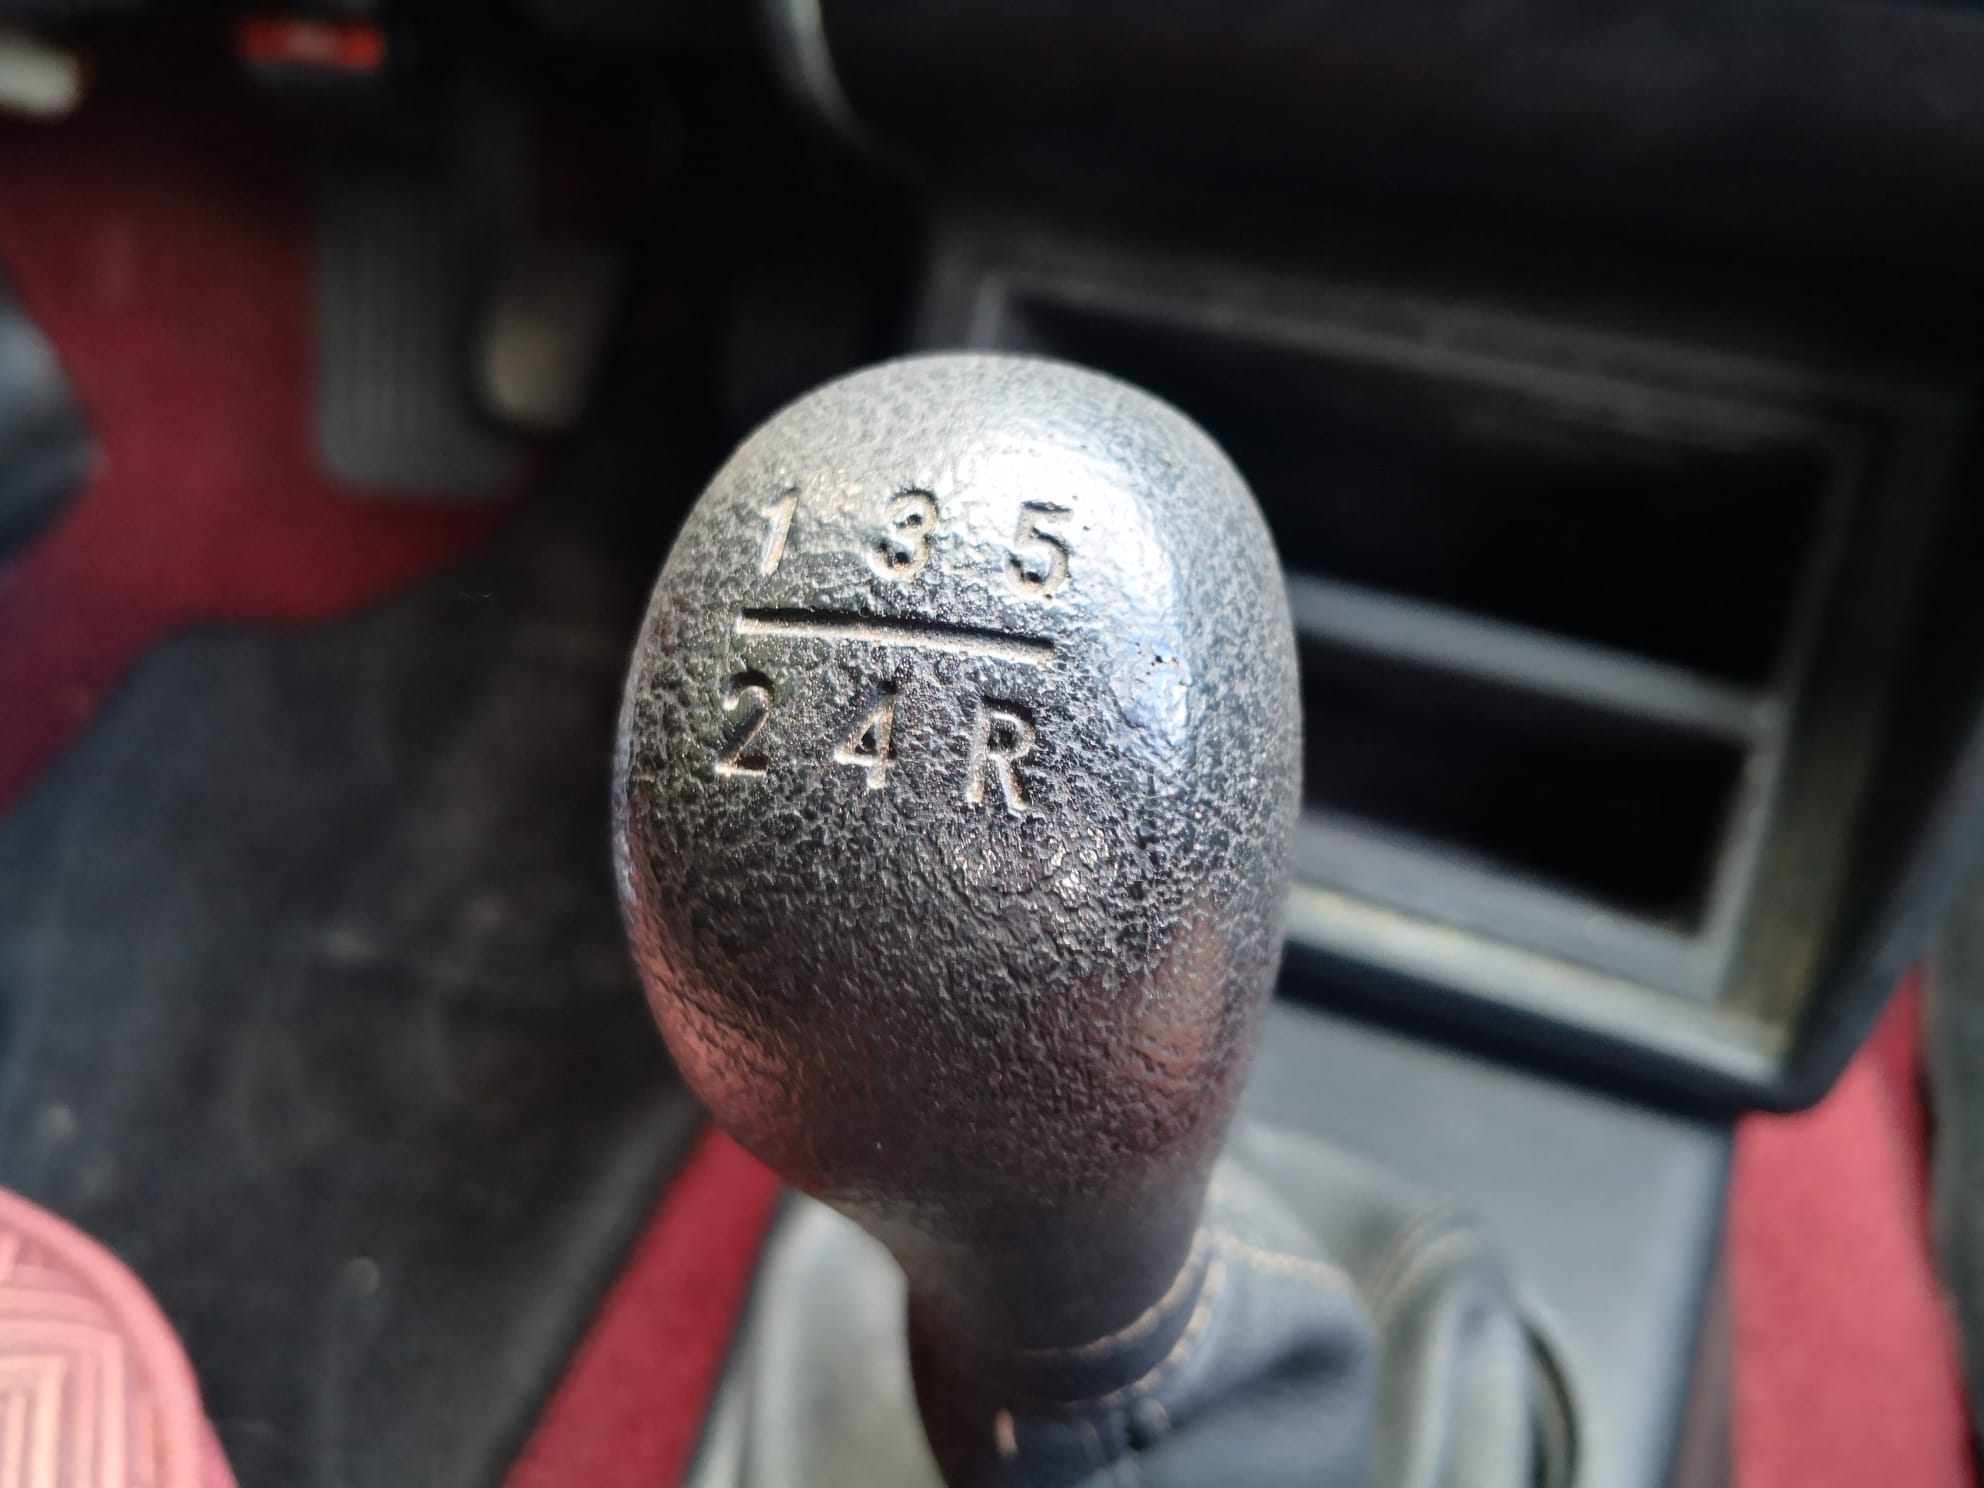 Lancia Delta 2.0 16v